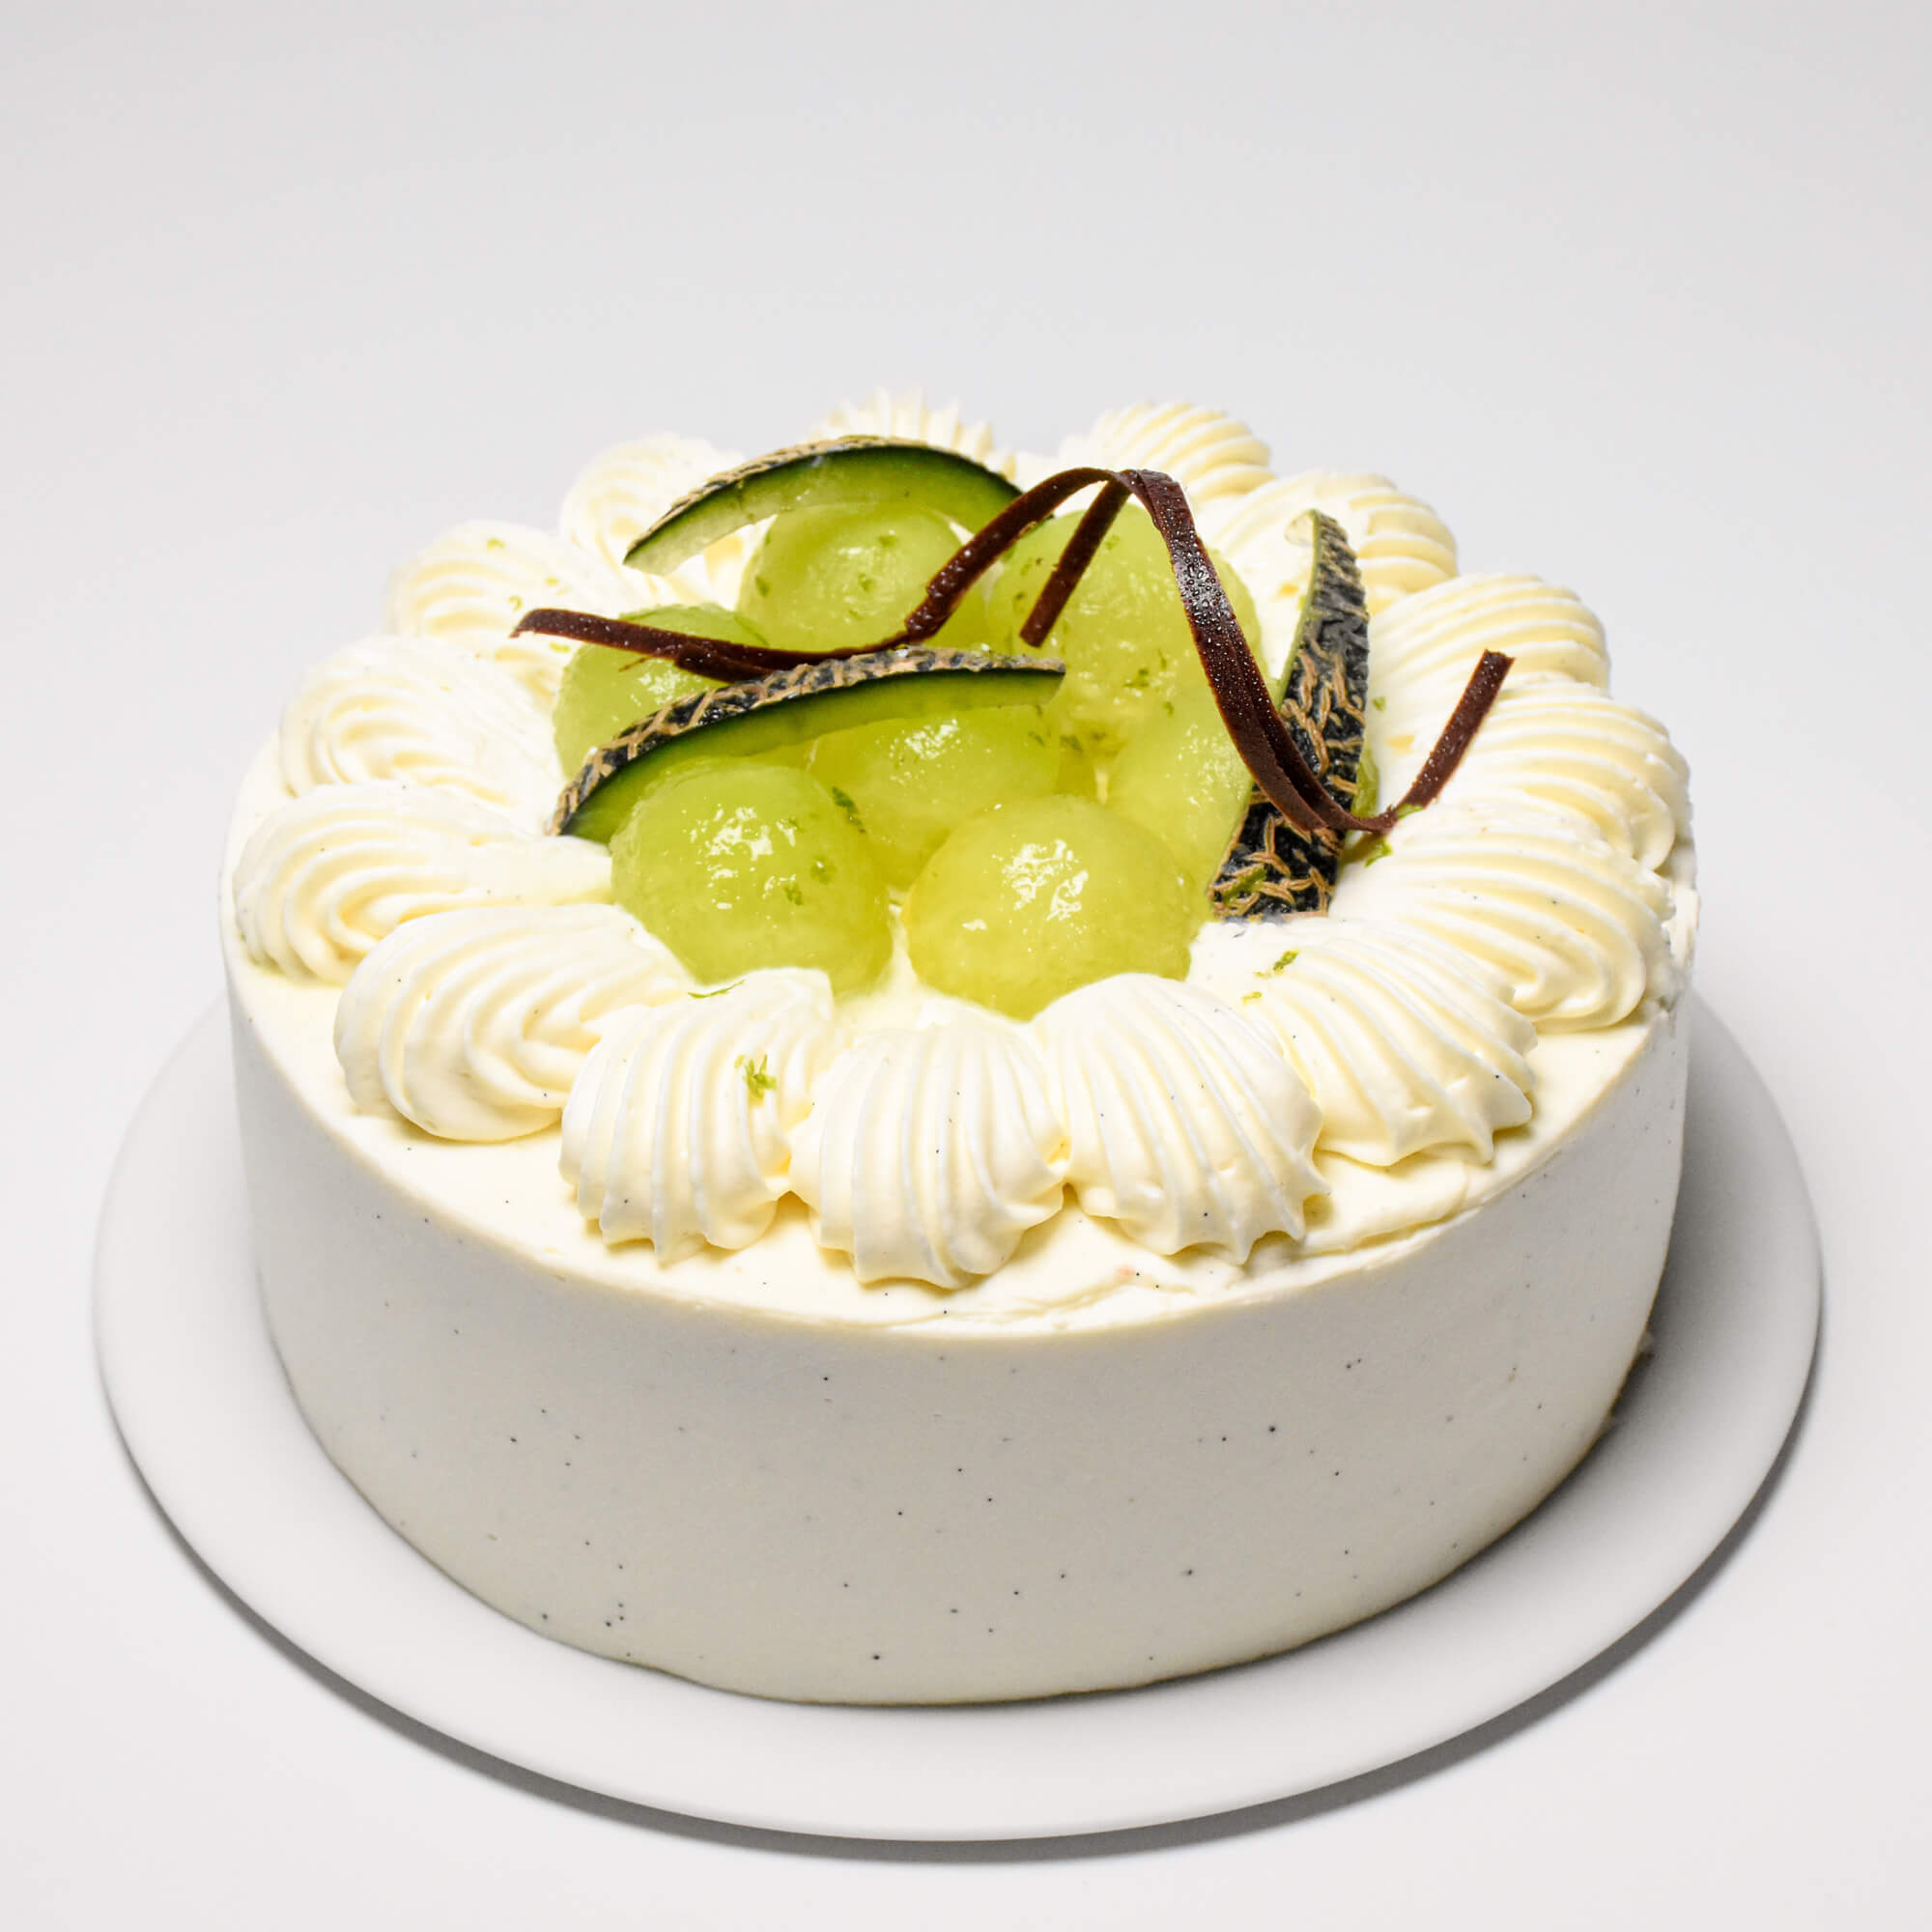 茨城県産メロンを贅沢に使ったケーキが新登場。ホワイトチョコレートの生クリームが旬のメロンをひきたてる季節限定ケーキが6月6日より発売。